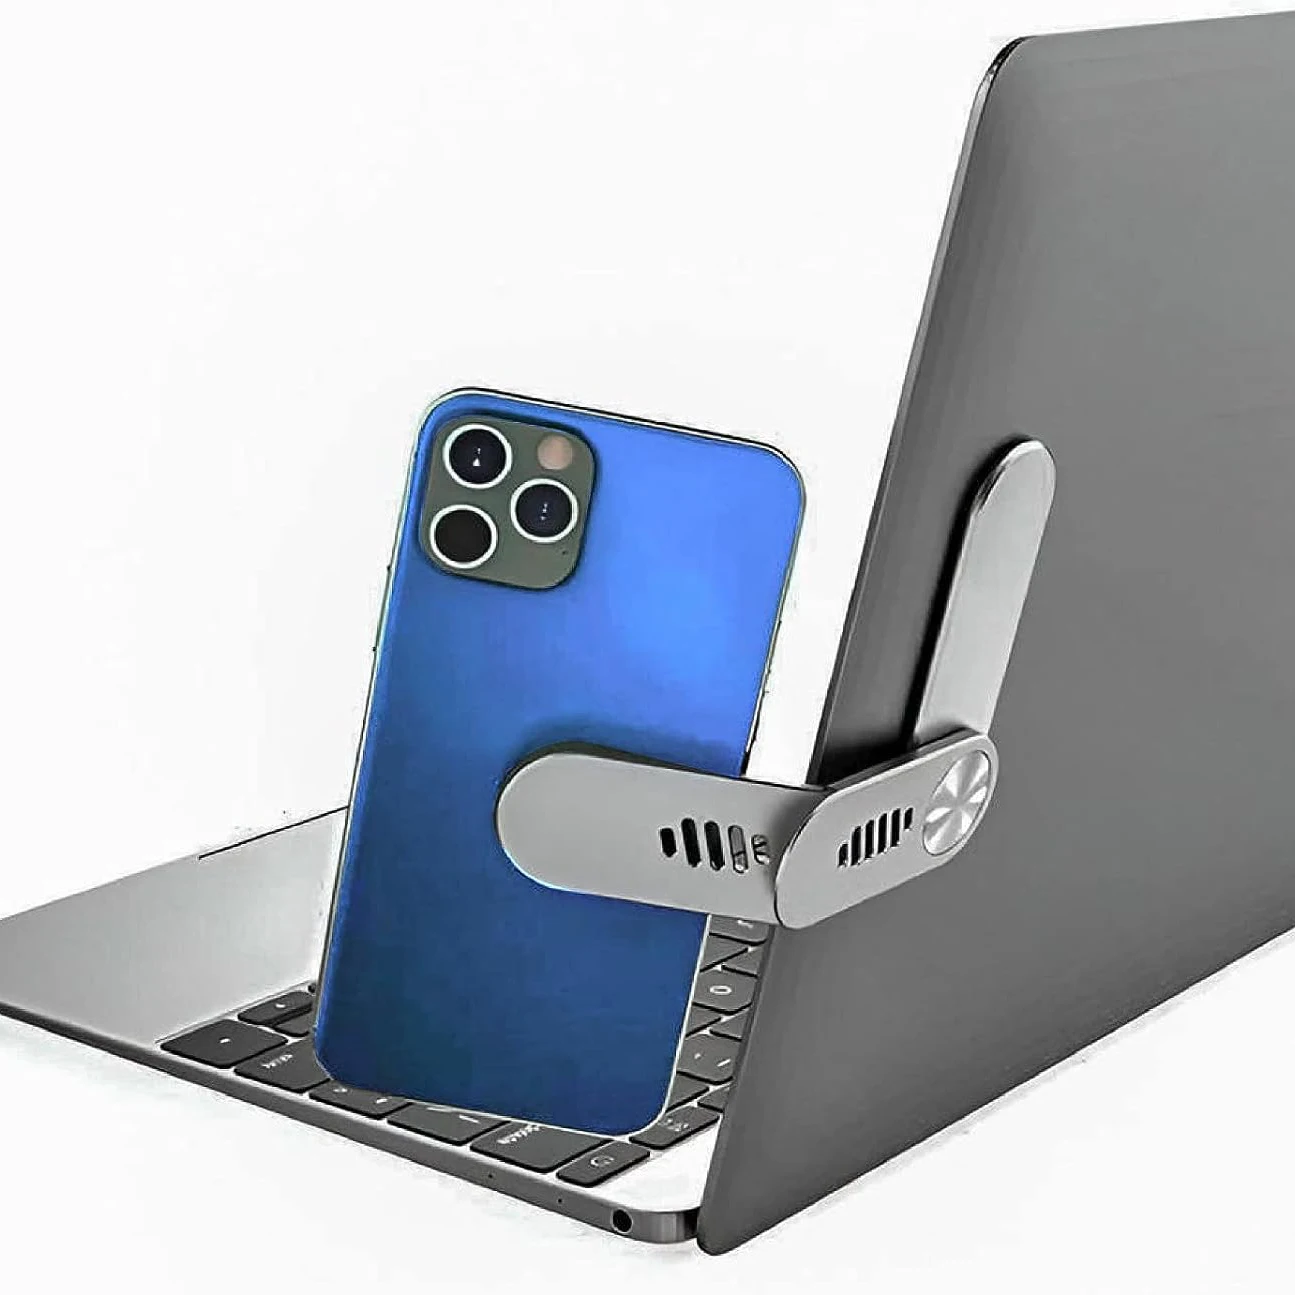 Новый Магнитный держатель для ноутбука и телефона, Зажим для бокового крепления портативного ноутбука, Регулируемый Кронштейн для расширения монитора компьютера из алюминиевого сплава